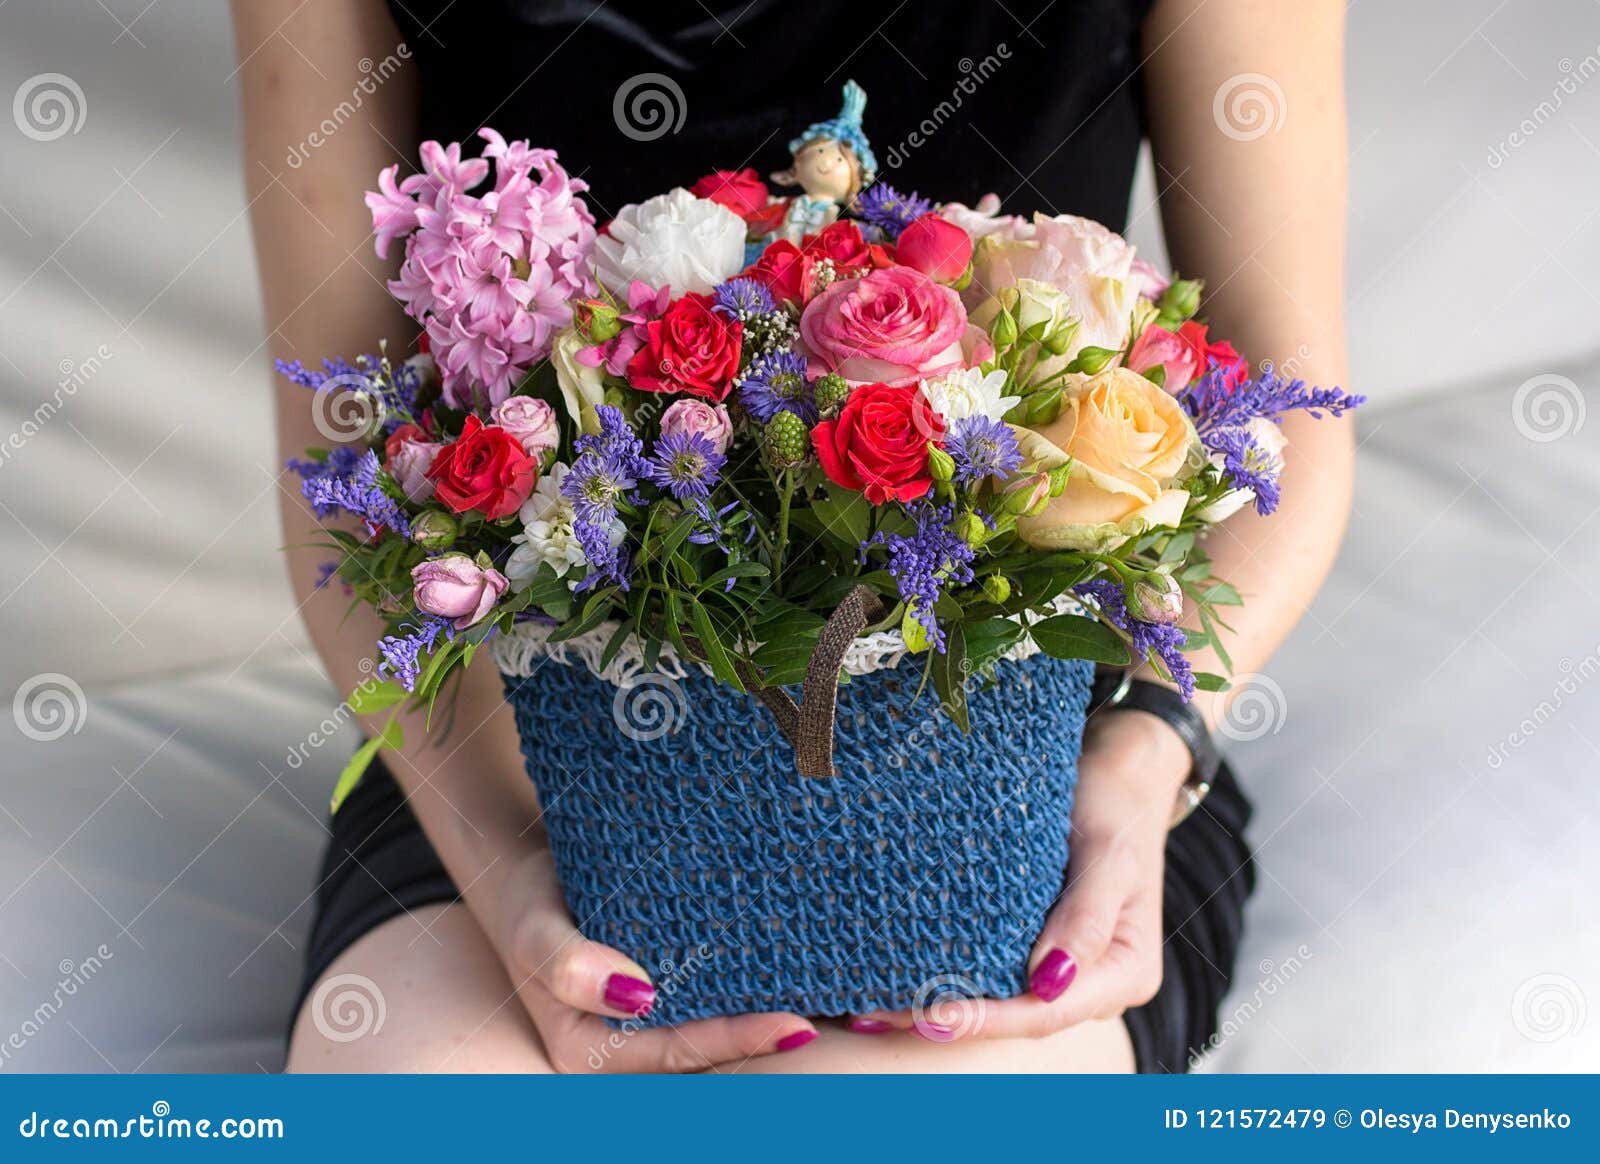 Canestro con i fiori luminosi alla mano della ragazza